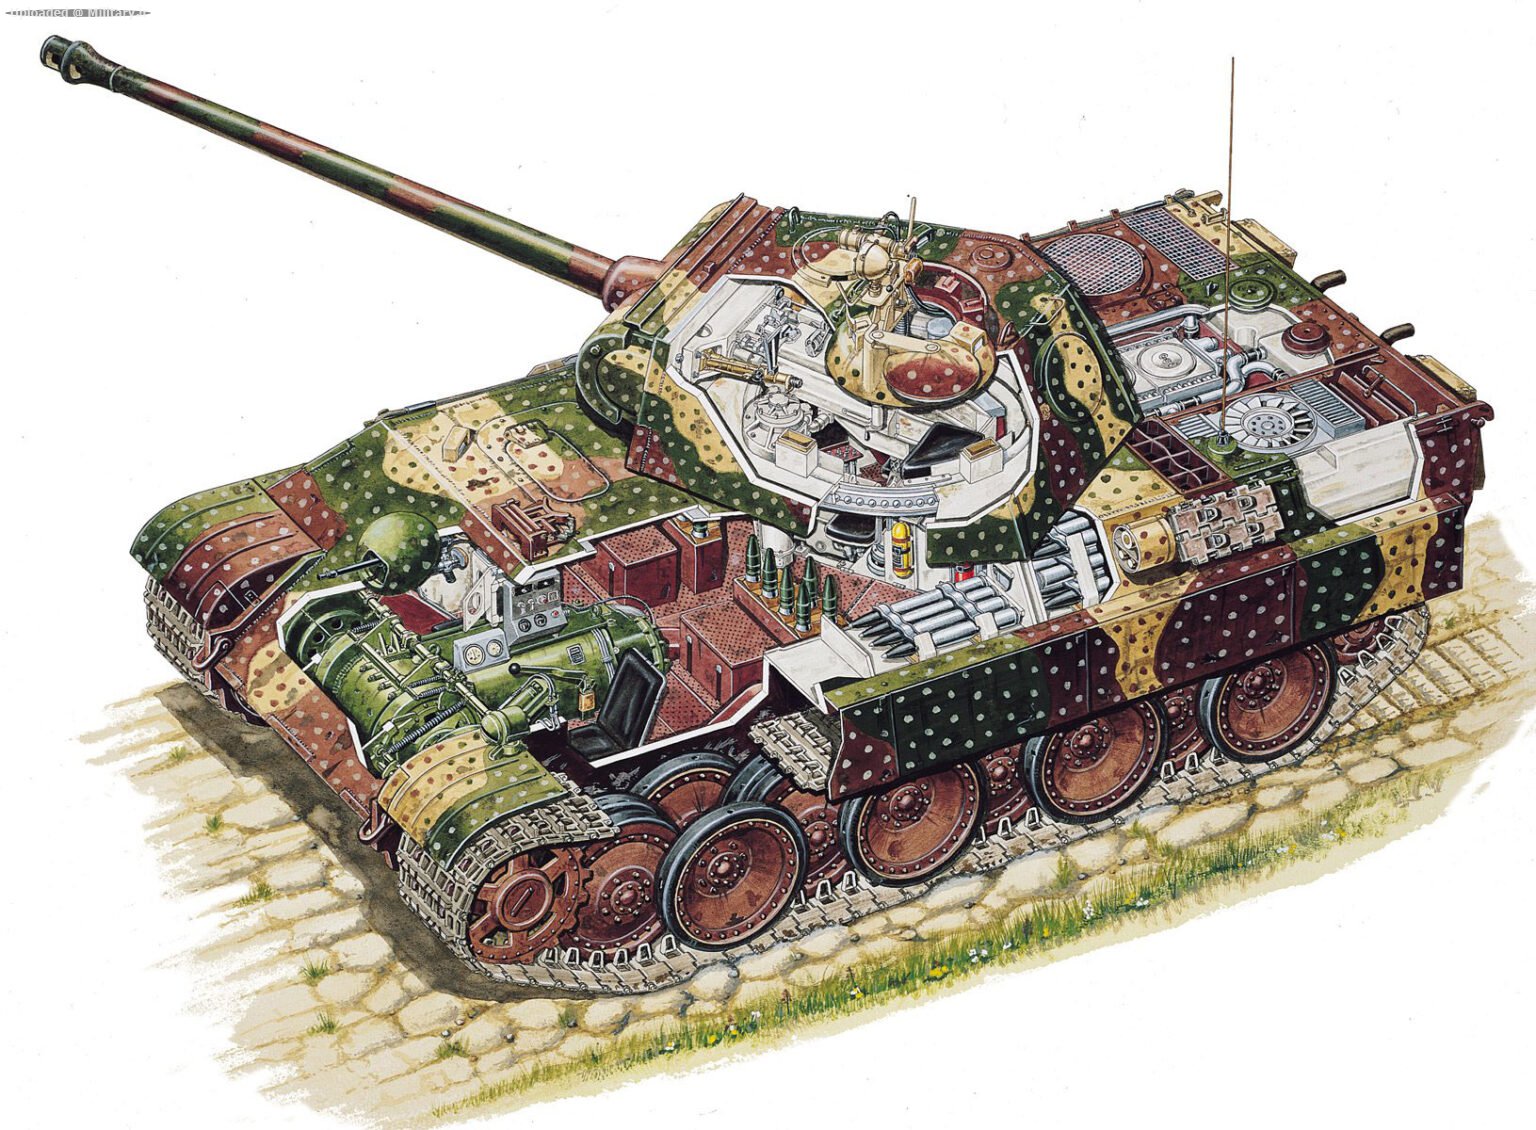 Panther_tank-1536x1130.jpg